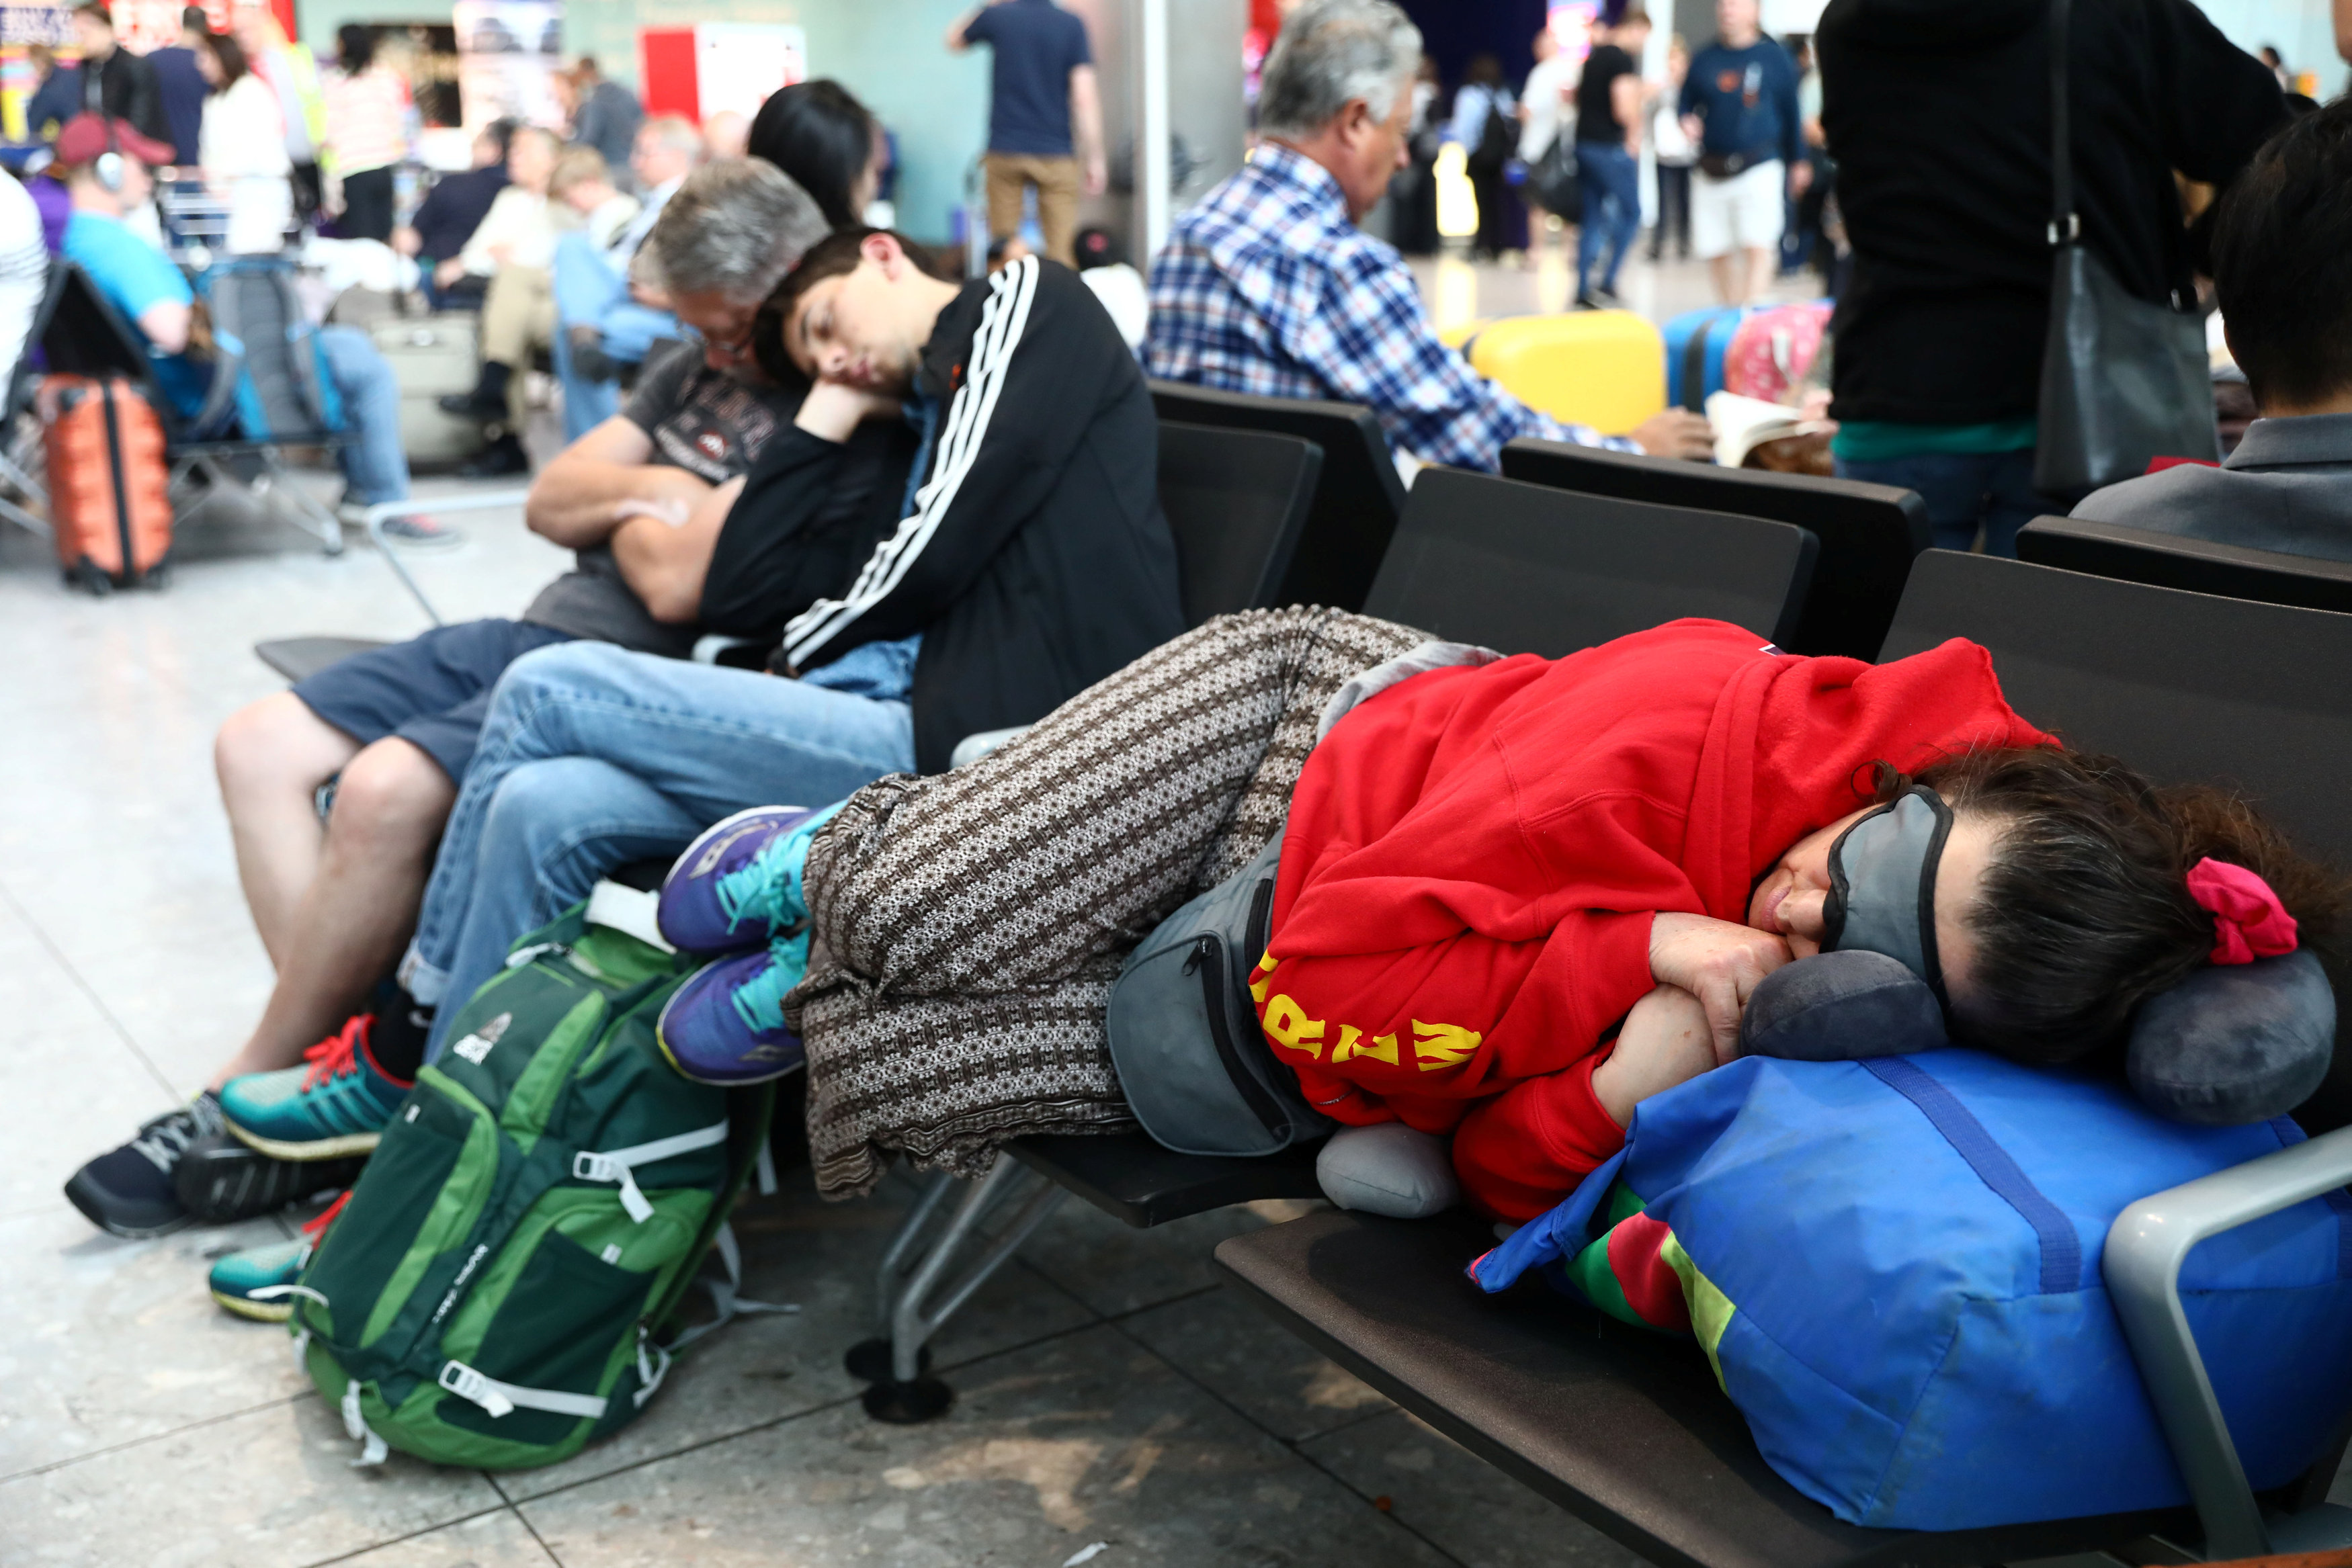 المسافرون ينامون على الكراسى فى انتظار انتظام الرحلات